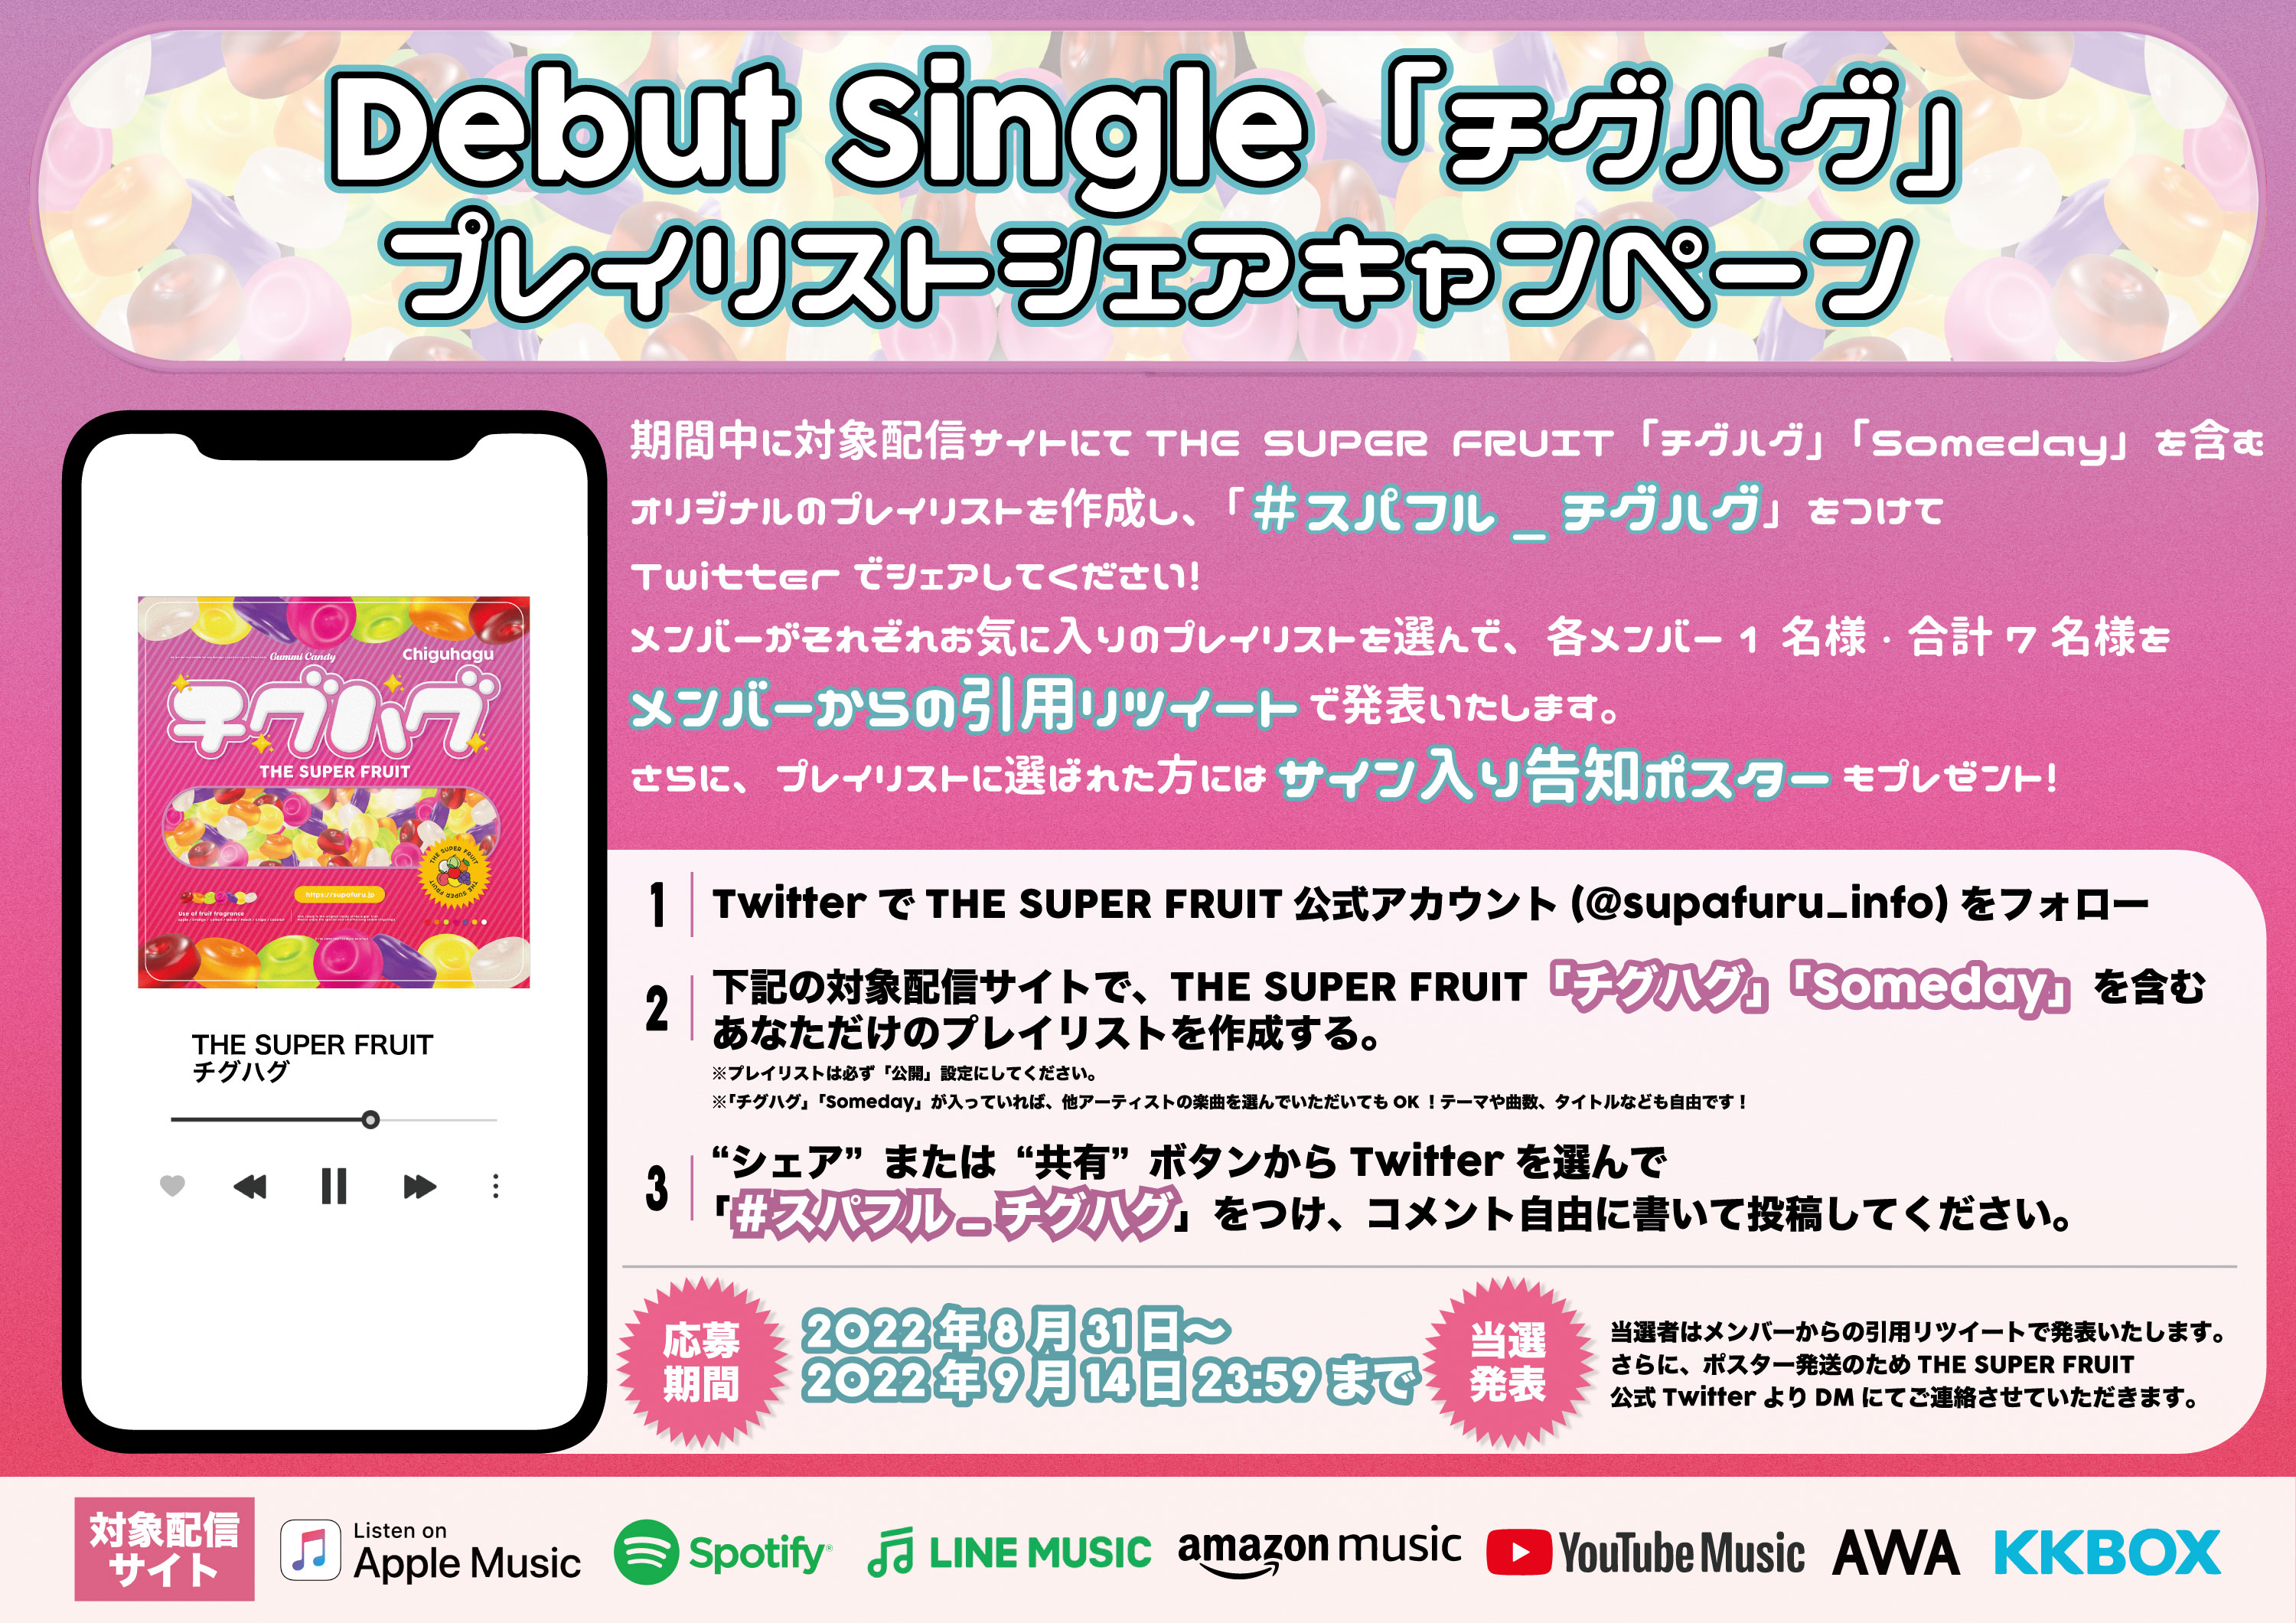 【NEWS】Debut Single「チグハグ」プレイリストシェアキャンペーン実施決定！